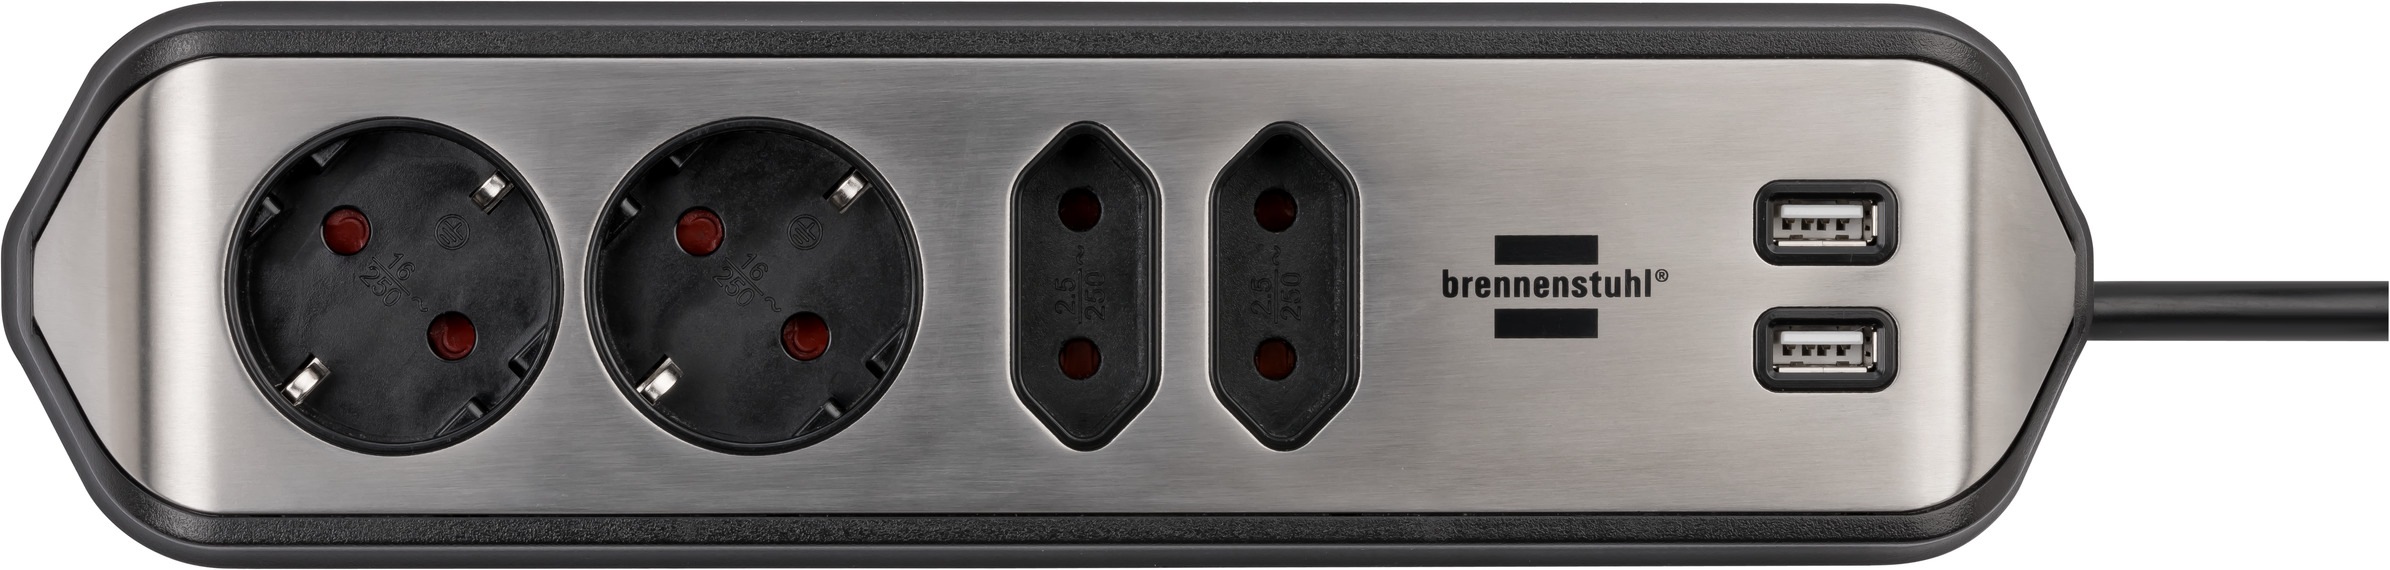 Brennenstuhl Steckdosenleiste "estilo", 4-fach, 2x Schutzkontakt-Steckdosen, 2x Euro-Steckdosen, USB-Ladefunktion